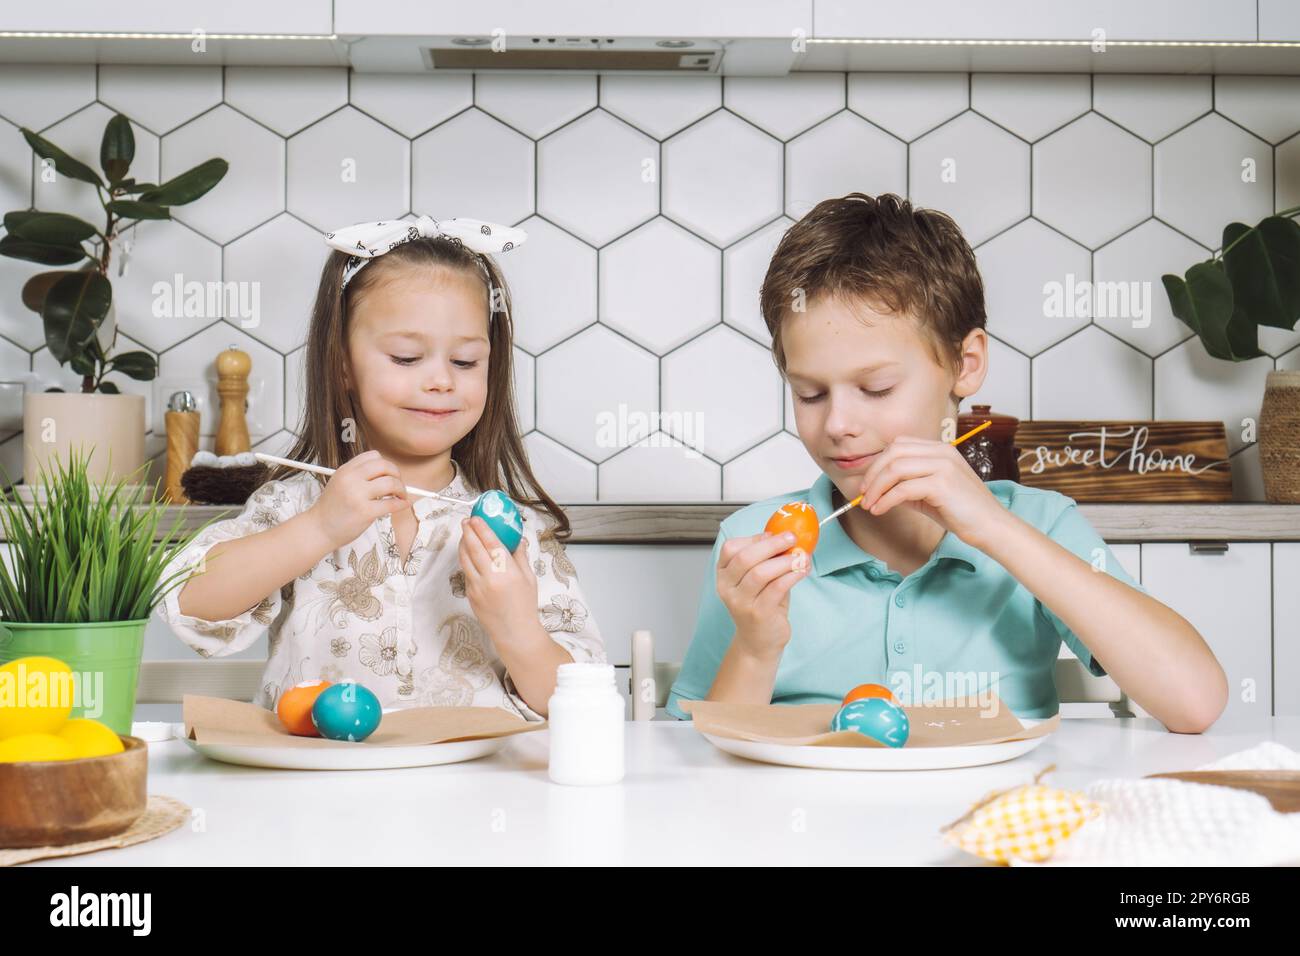 Portrait de deux enfants souriants, petite fille et garçon, pinceau à colorier blanc bleu rouge oeufs de Pâques. Maison agréable Banque D'Images